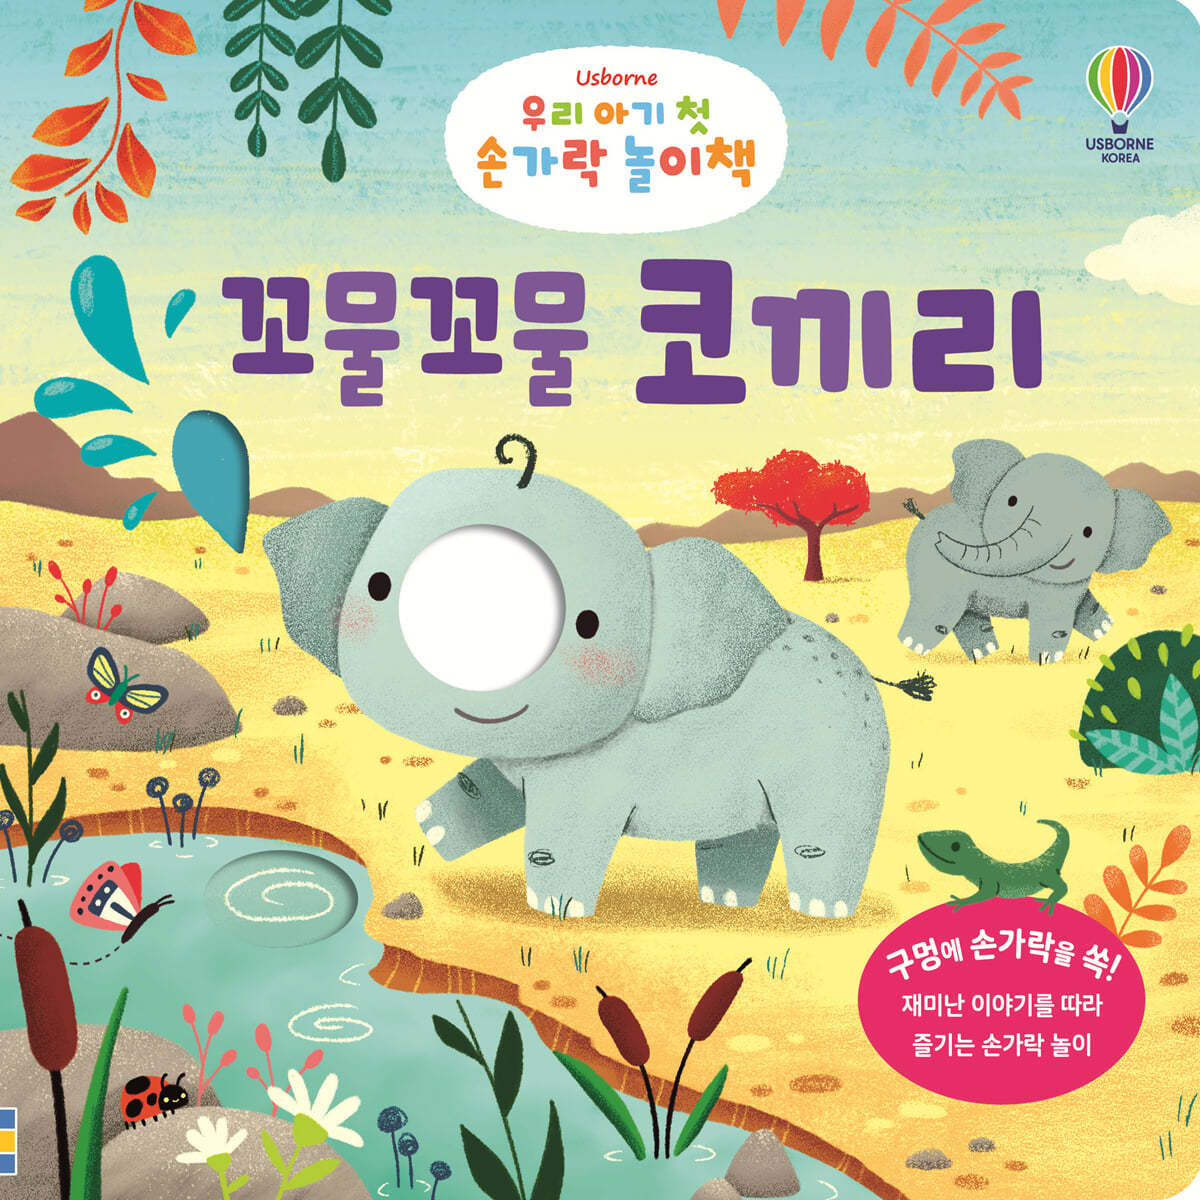 우리 아기 첫 손가락 놀이책 : 꼬물꼬물 코끼리